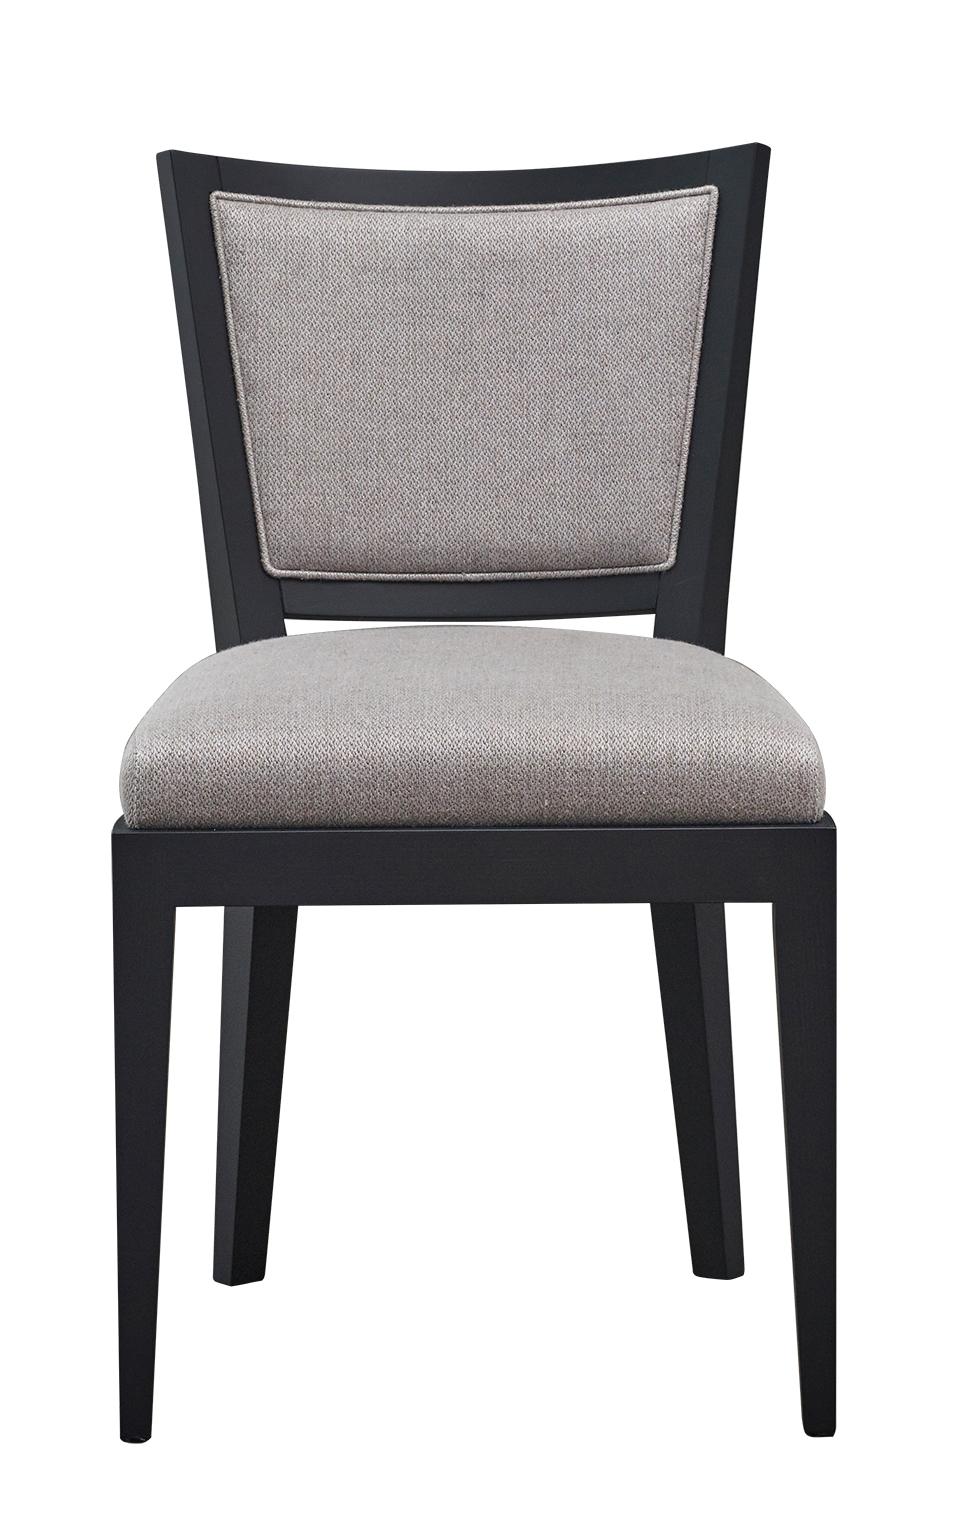 Caffè est une chaise de salle à manger en bois avec dossier en paille et assise en tissu ou cuir. Ce meuble figure dans le catalogue Promemoria | Promemoria